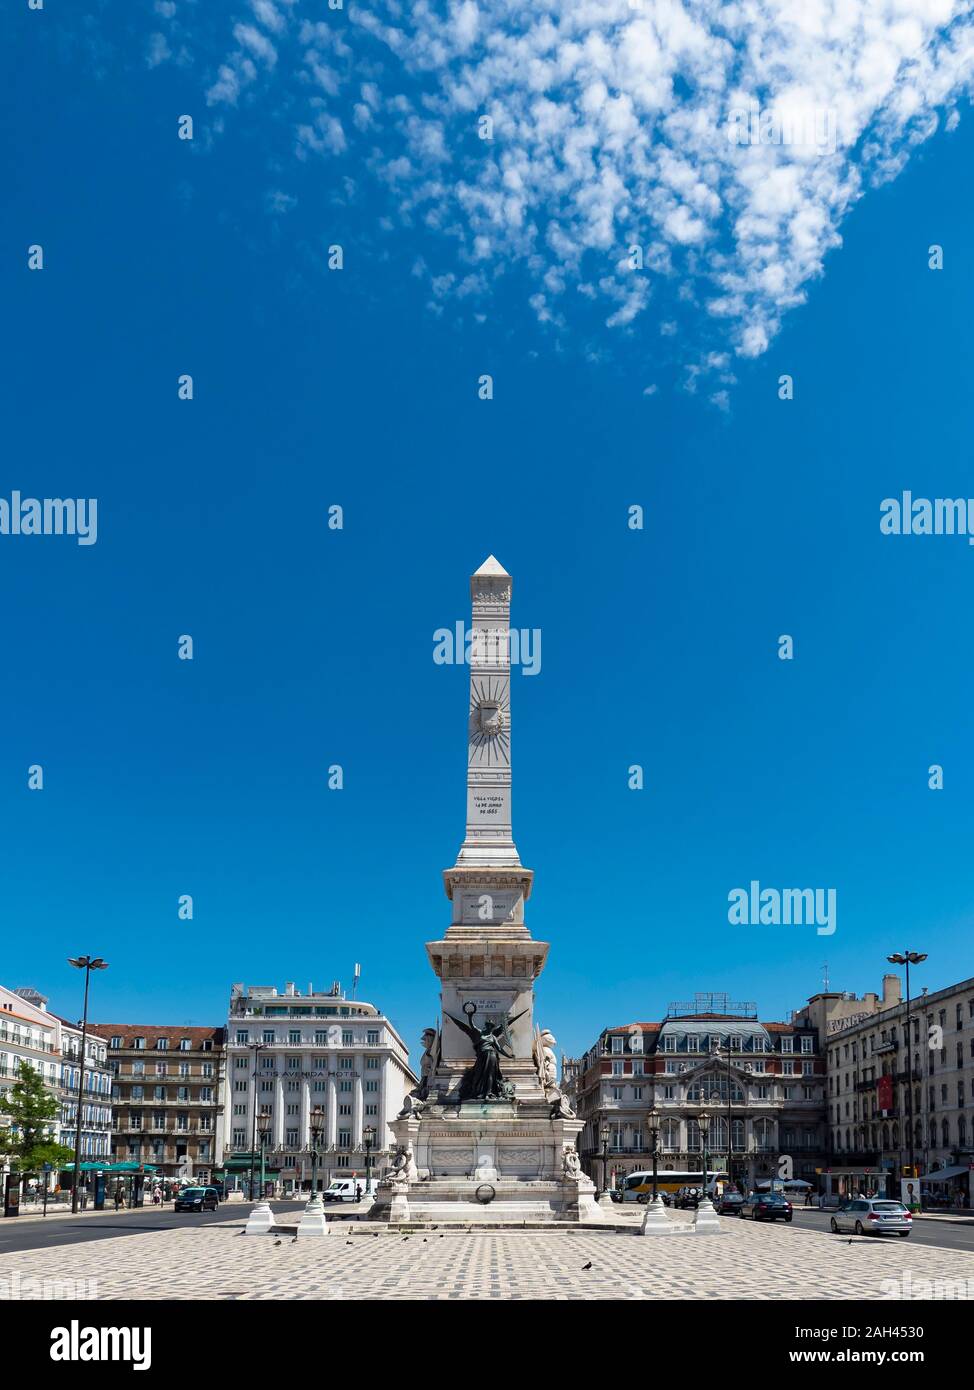 Restauradores Platz und das Denkmal für die Restauratoren, Lissabon, Portugal Stockfoto